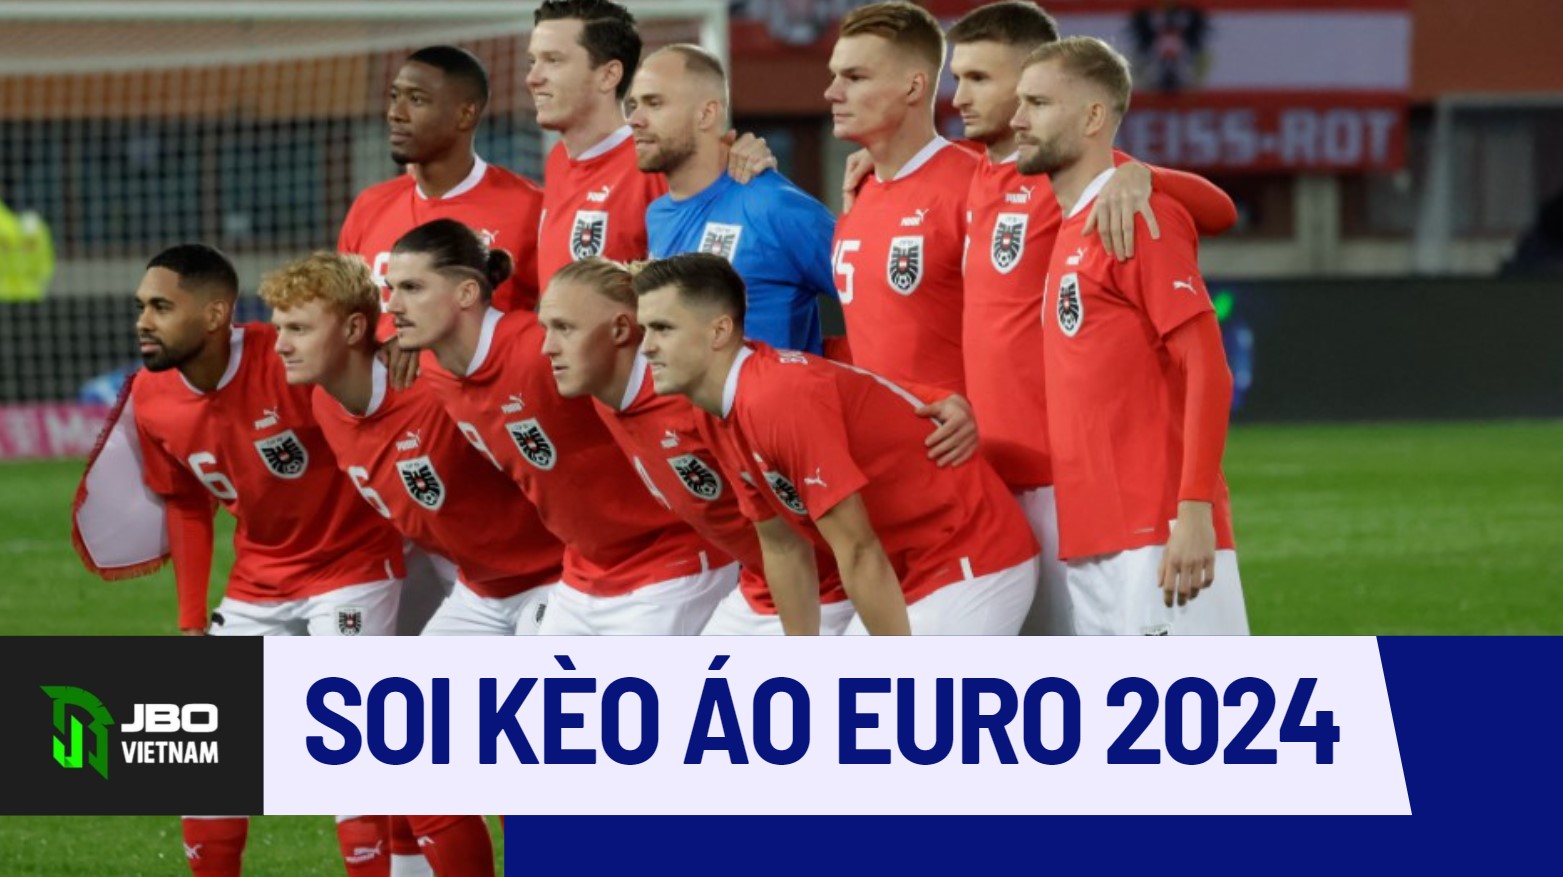 Đội Hình Tuyển Áo Tại Kèo Vòng Loại EURO 2024